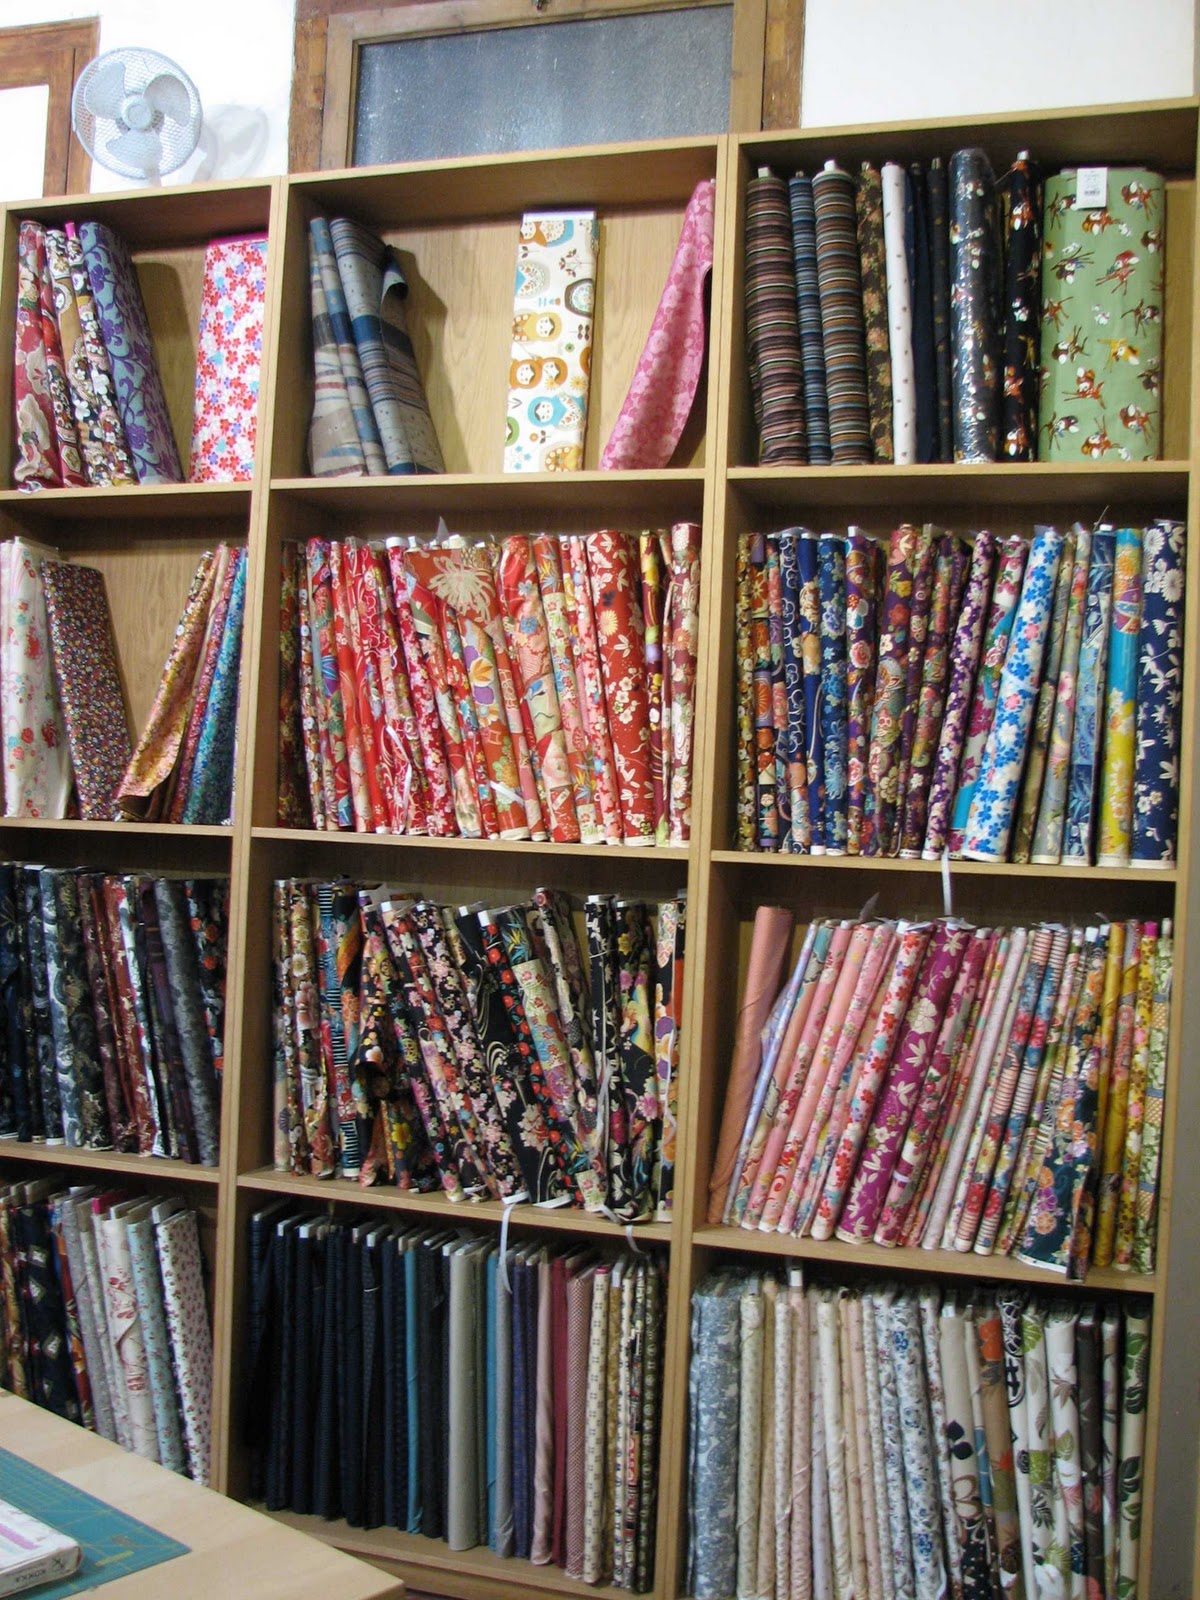 Escuela de Bordado: Telas para bordar / Embroidery School: Fabrics to  embroider - The Crafty Room